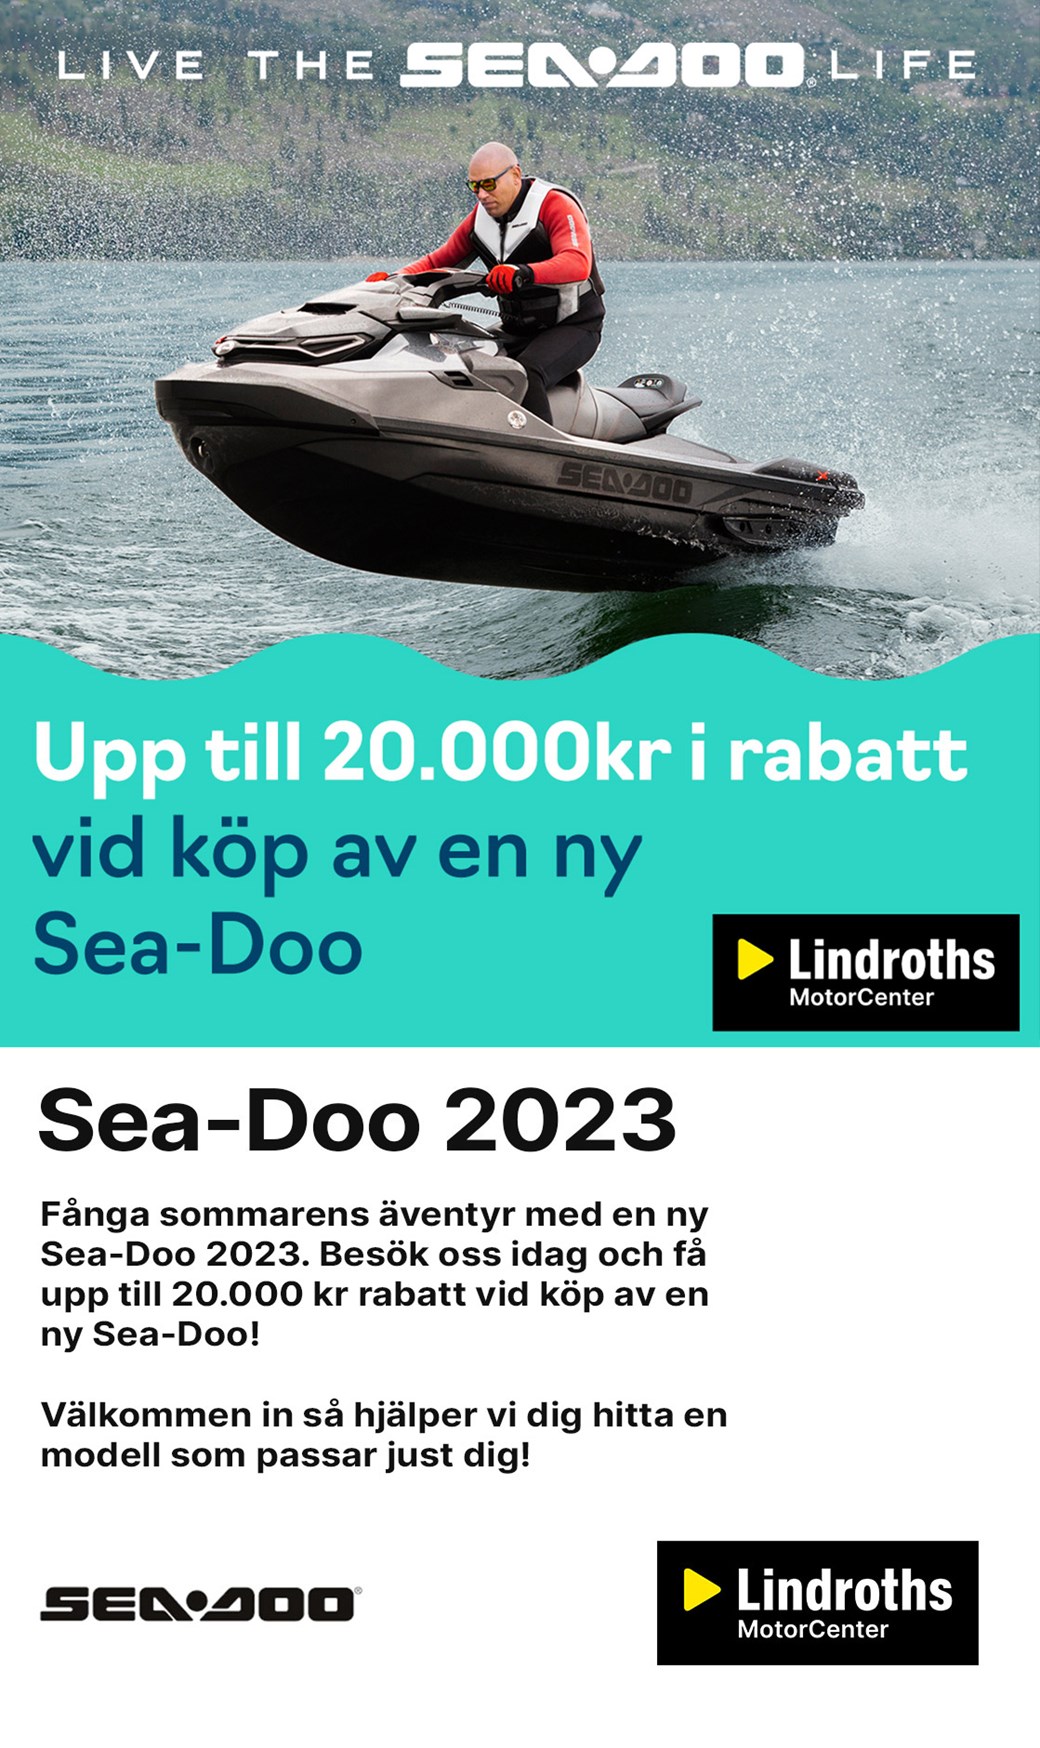 Sea-Doo 2023 - upp till 20.000 kr rabatt!